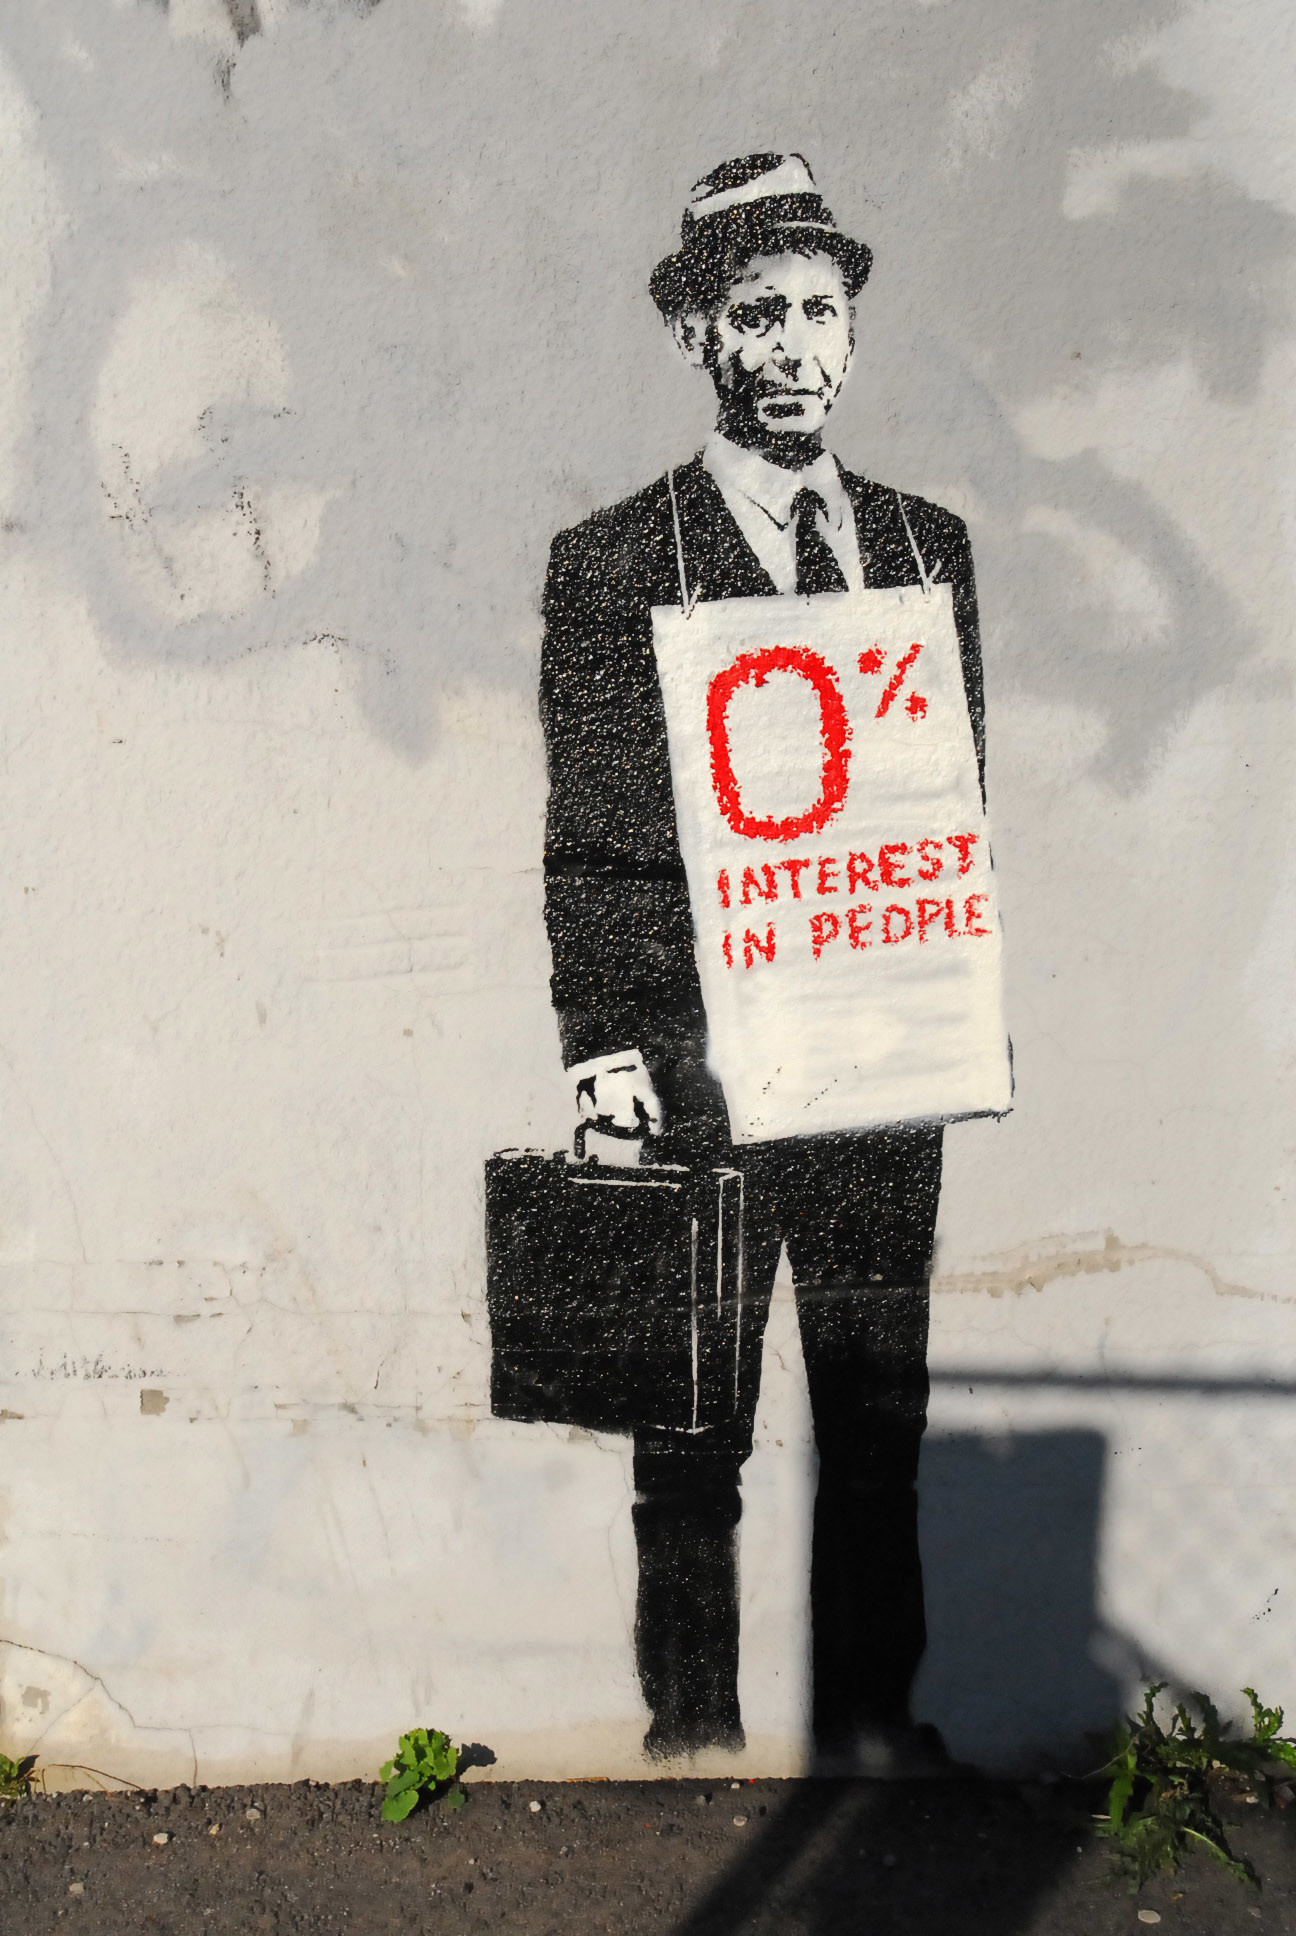 … Wallpapers PostersandPrints | An Urban Street Art Blog | Art Blog  Covering .